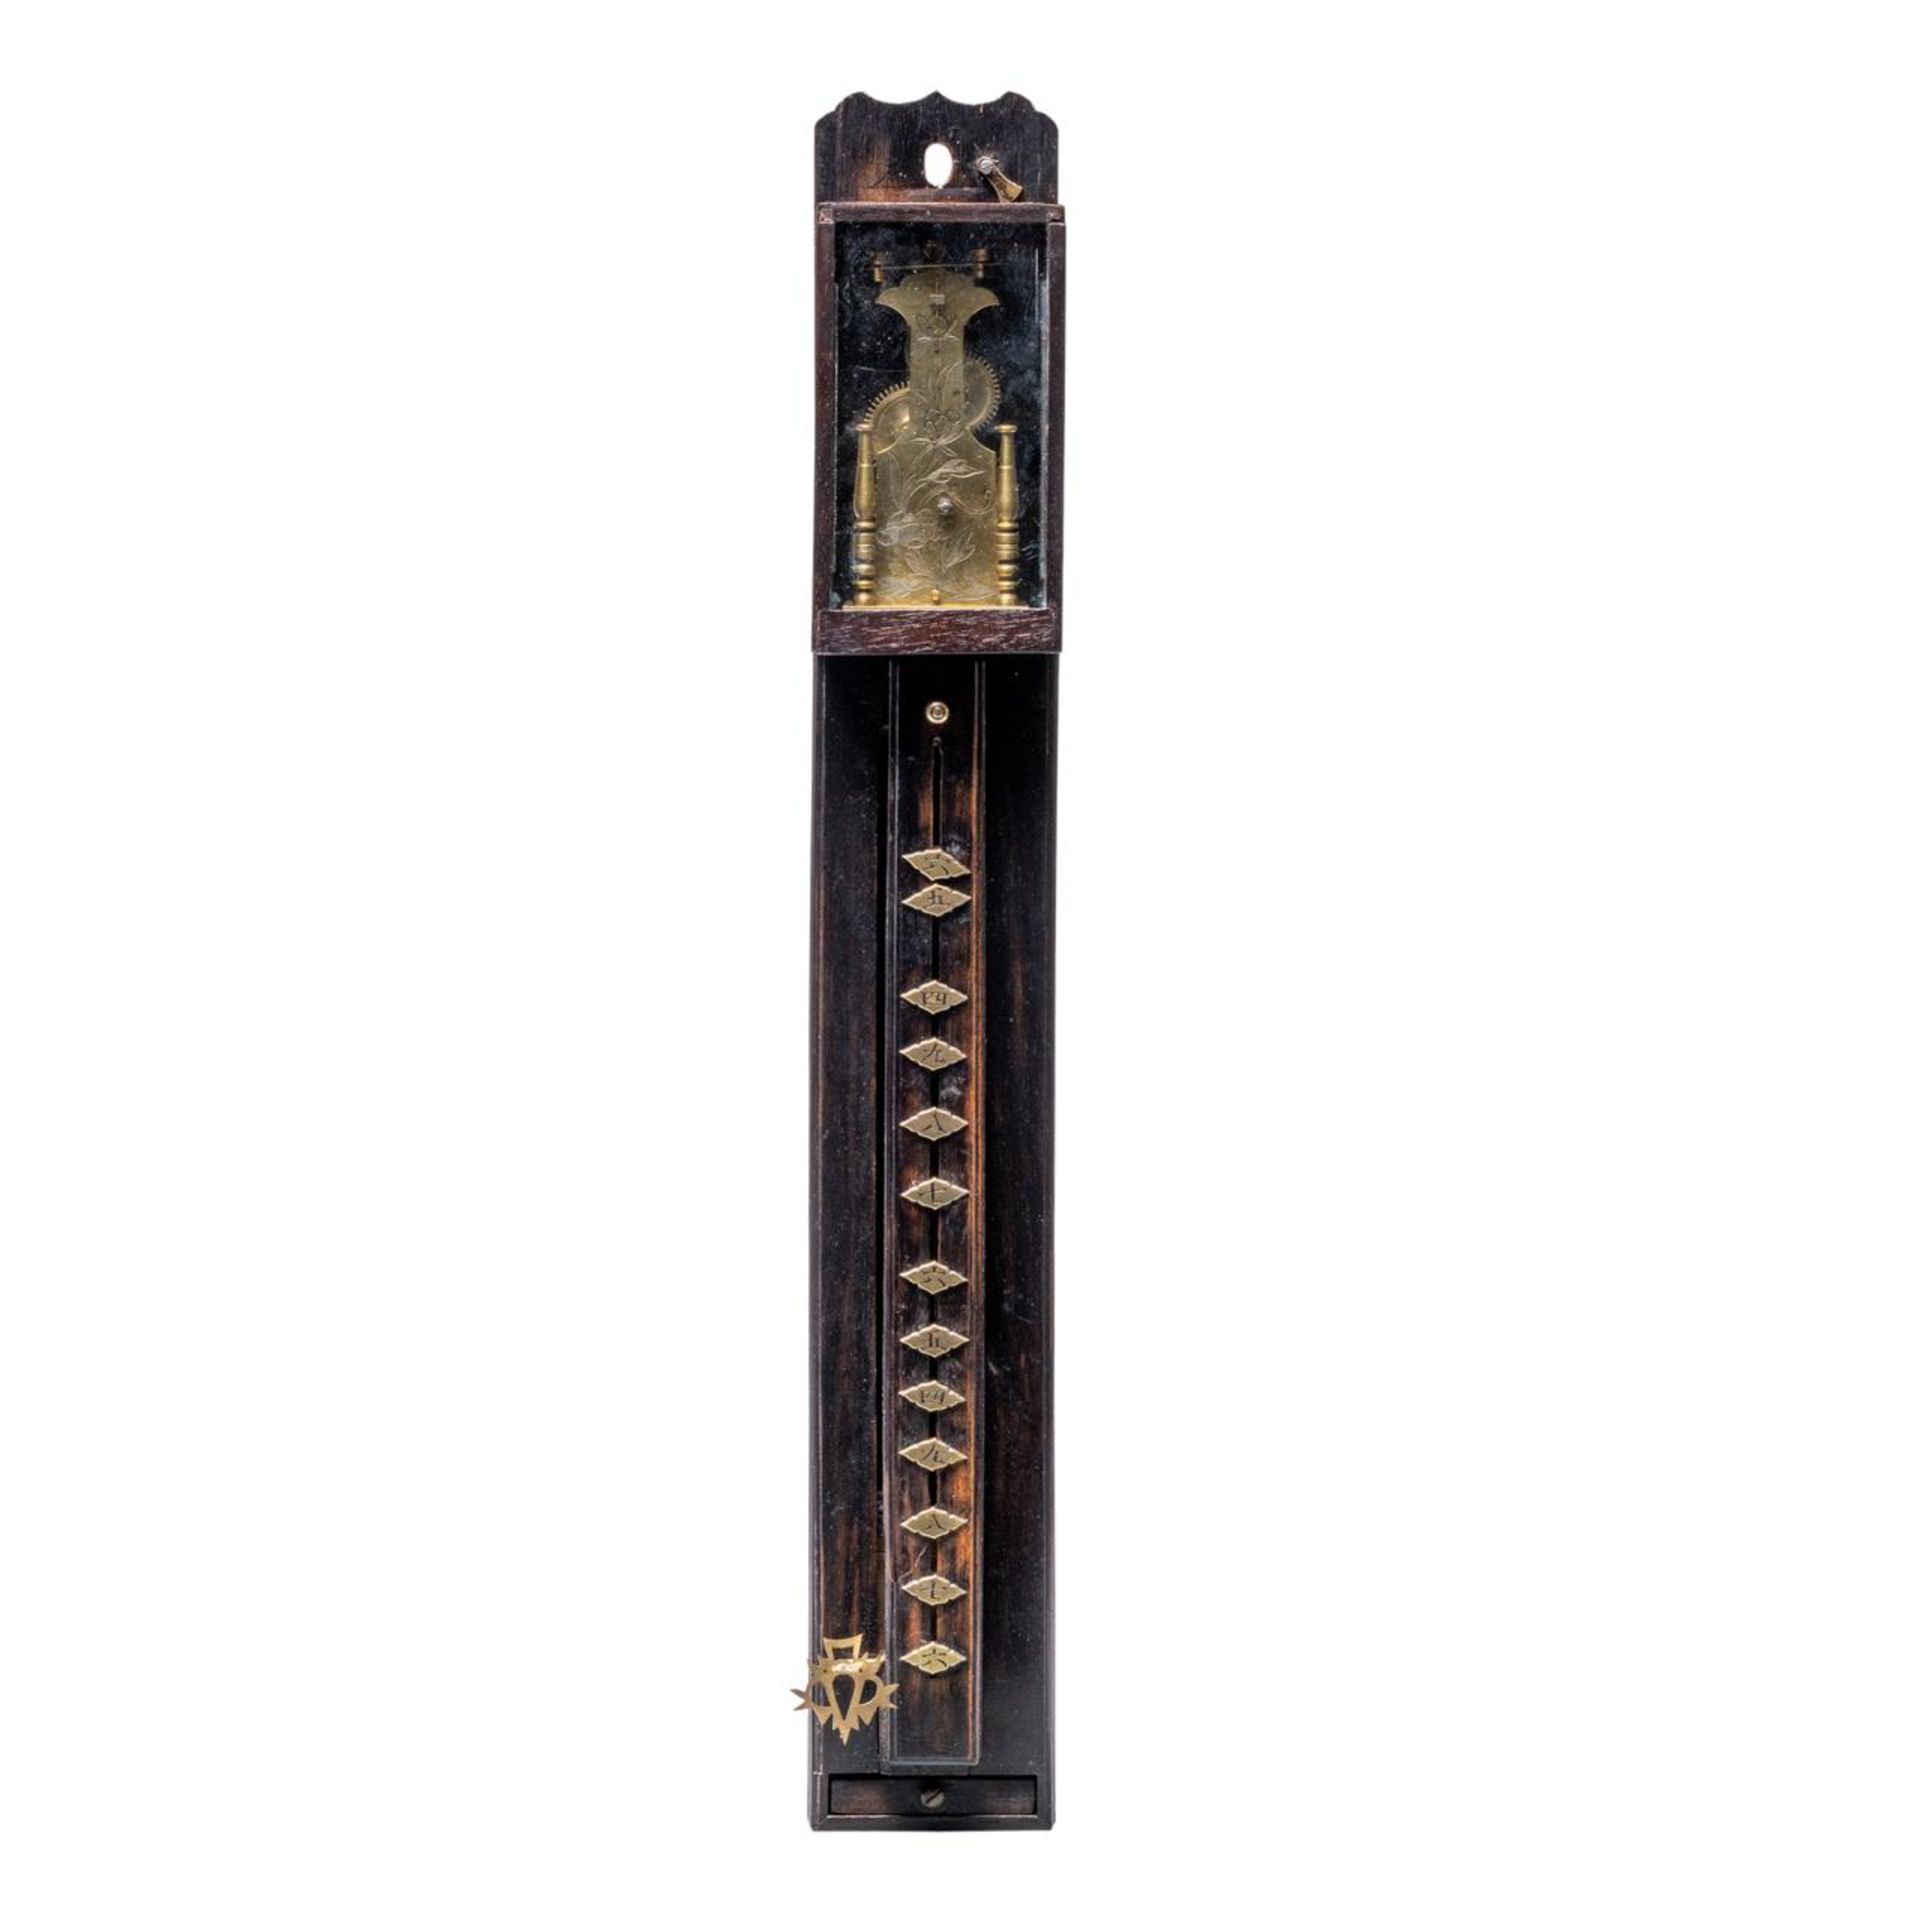 A late Edo / 19thC Japanese Shaku-dokei Pillar Clock, H 44 - W 6,2 cm